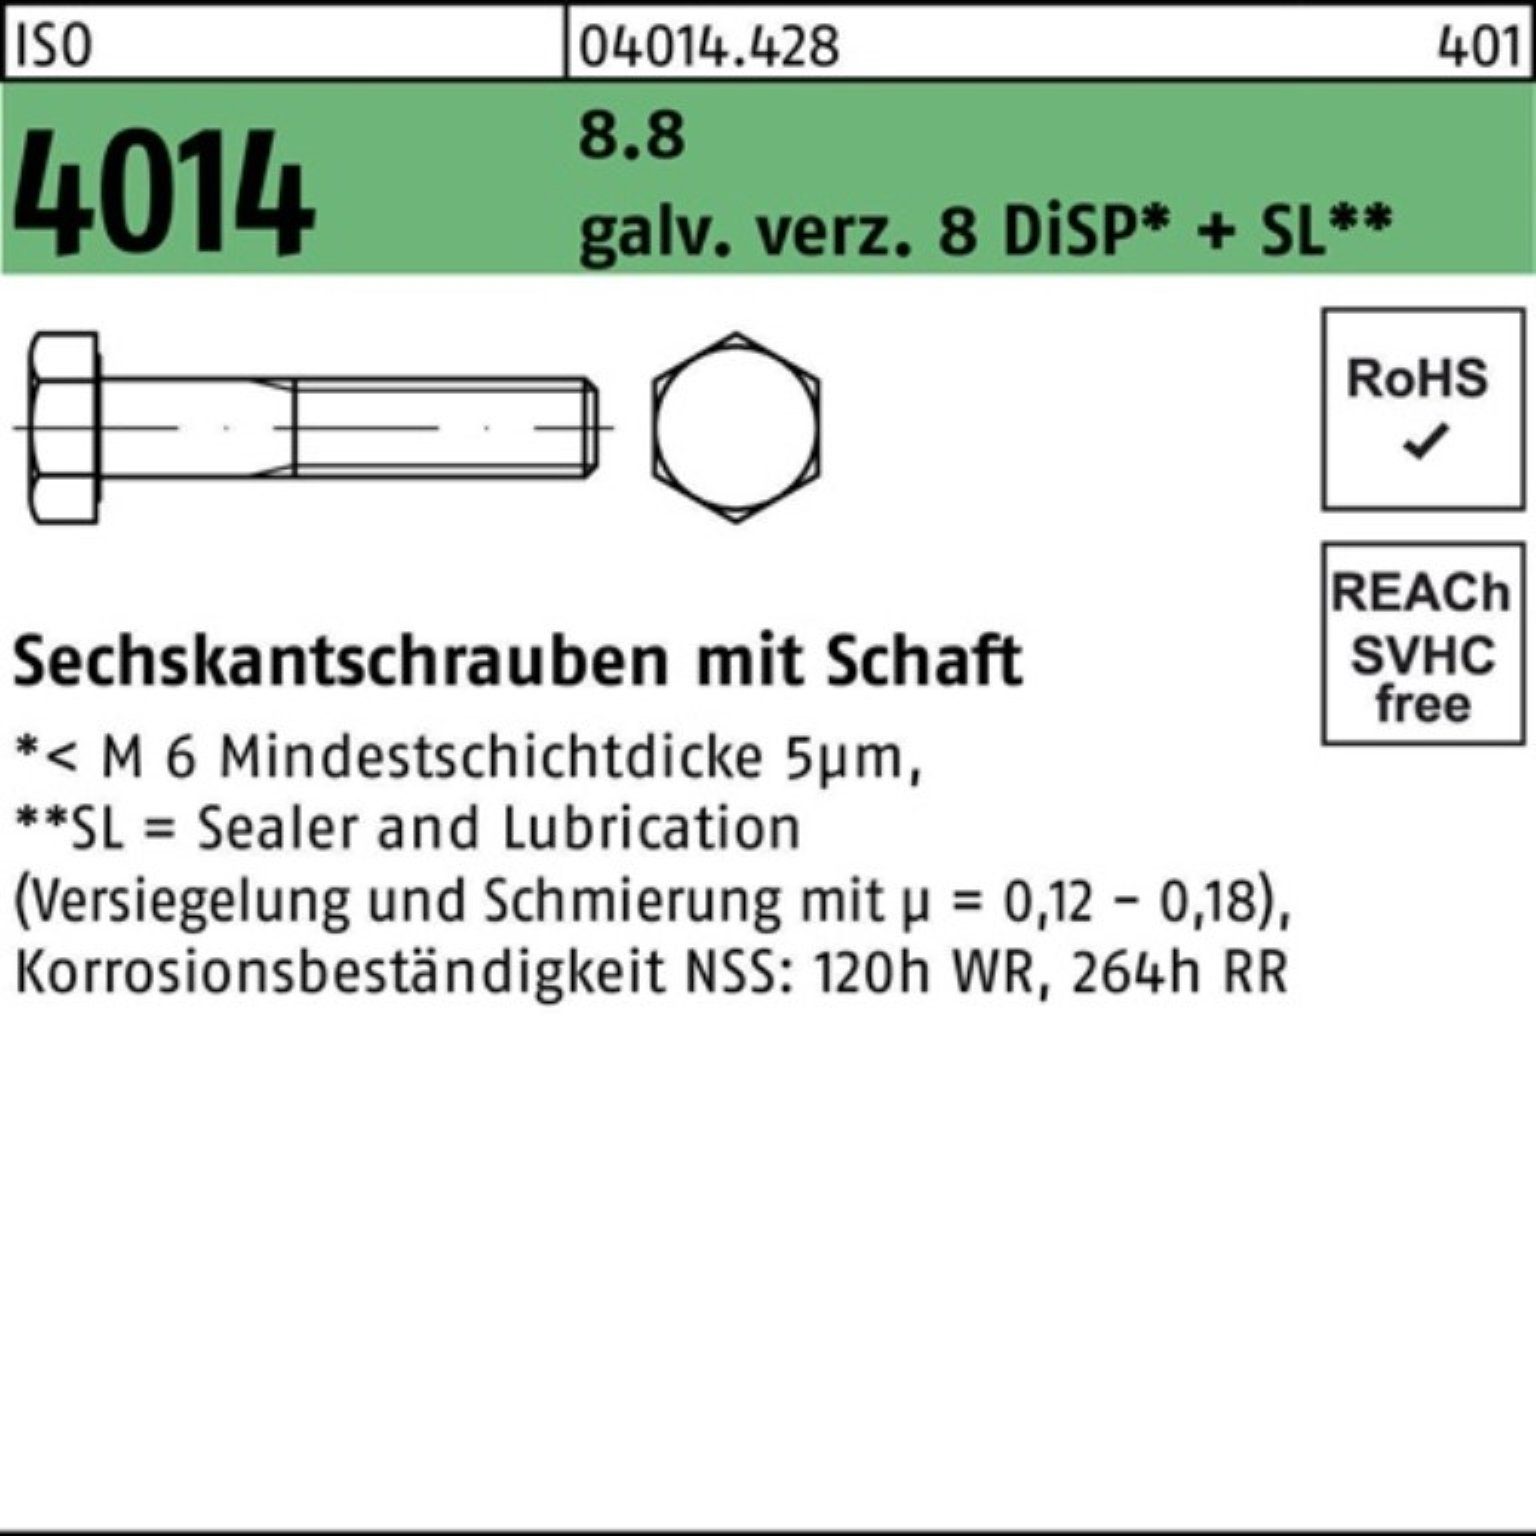 Bufab Sechskantschraube 100er Pack 8 8.8 4014 Sechskantschraube galv.verz. Schaft M12x100 ISO